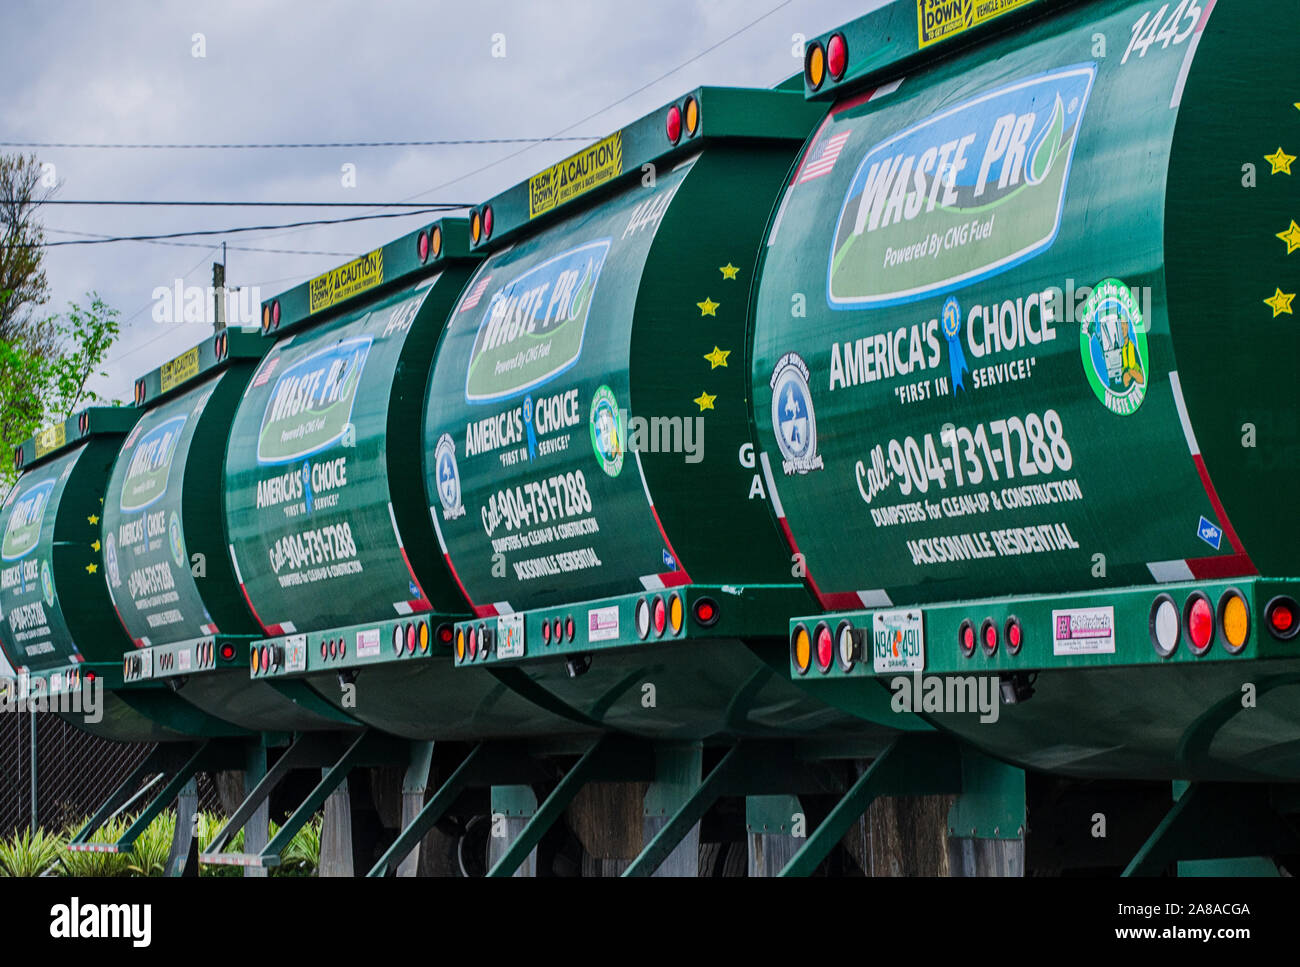 Il GNC-powered (gas naturale compresso) Mack Trucks linea fino a rifiuti Pro time-stazione di riempimento, Marzo 19, 2016 a Jacksonville, in Florida. Foto Stock